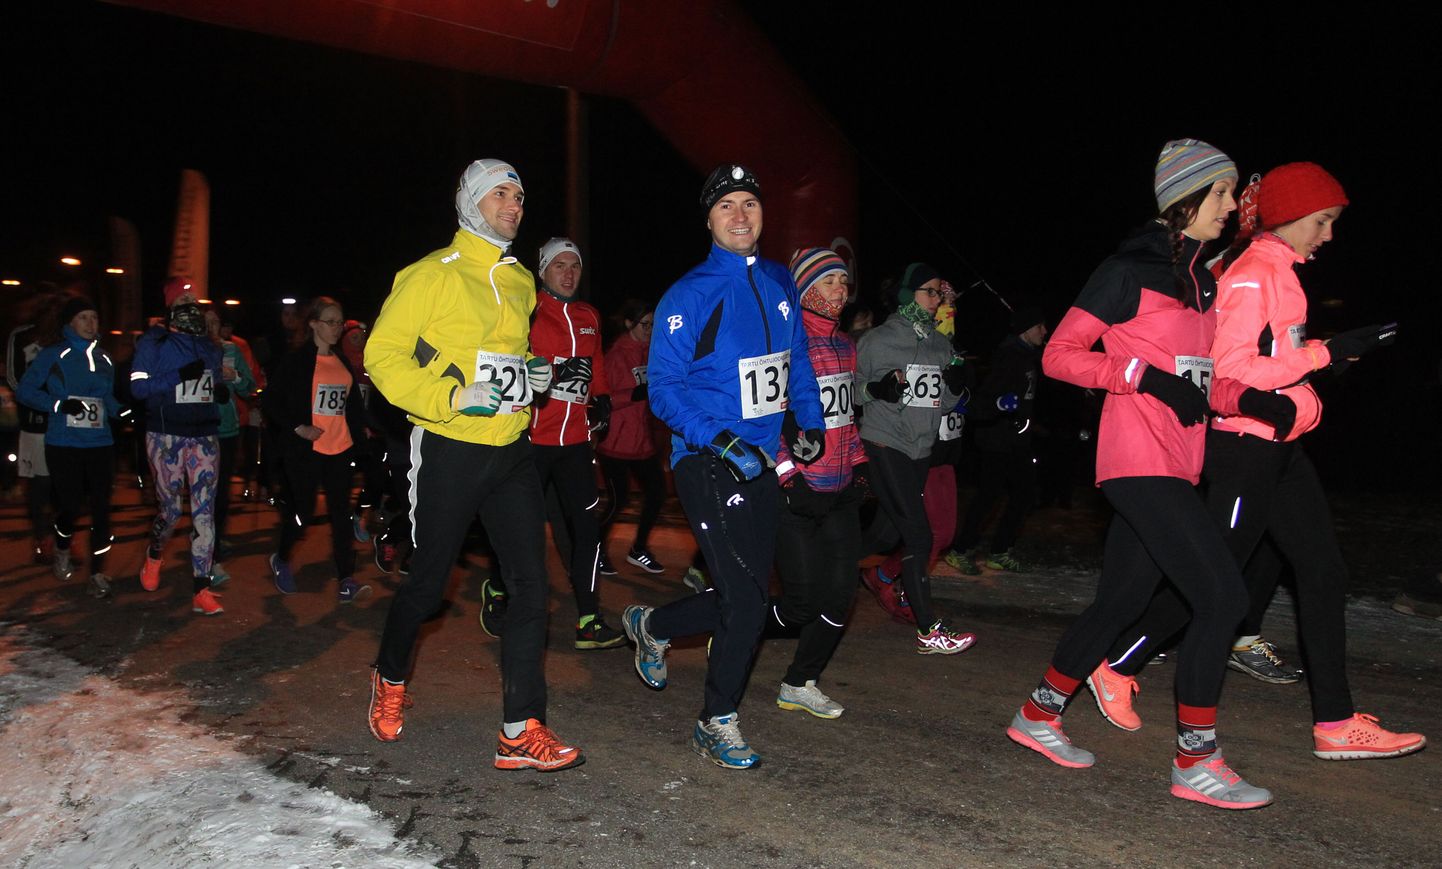 Esimene Tartu õhtujooks 2015. aasta novembris.